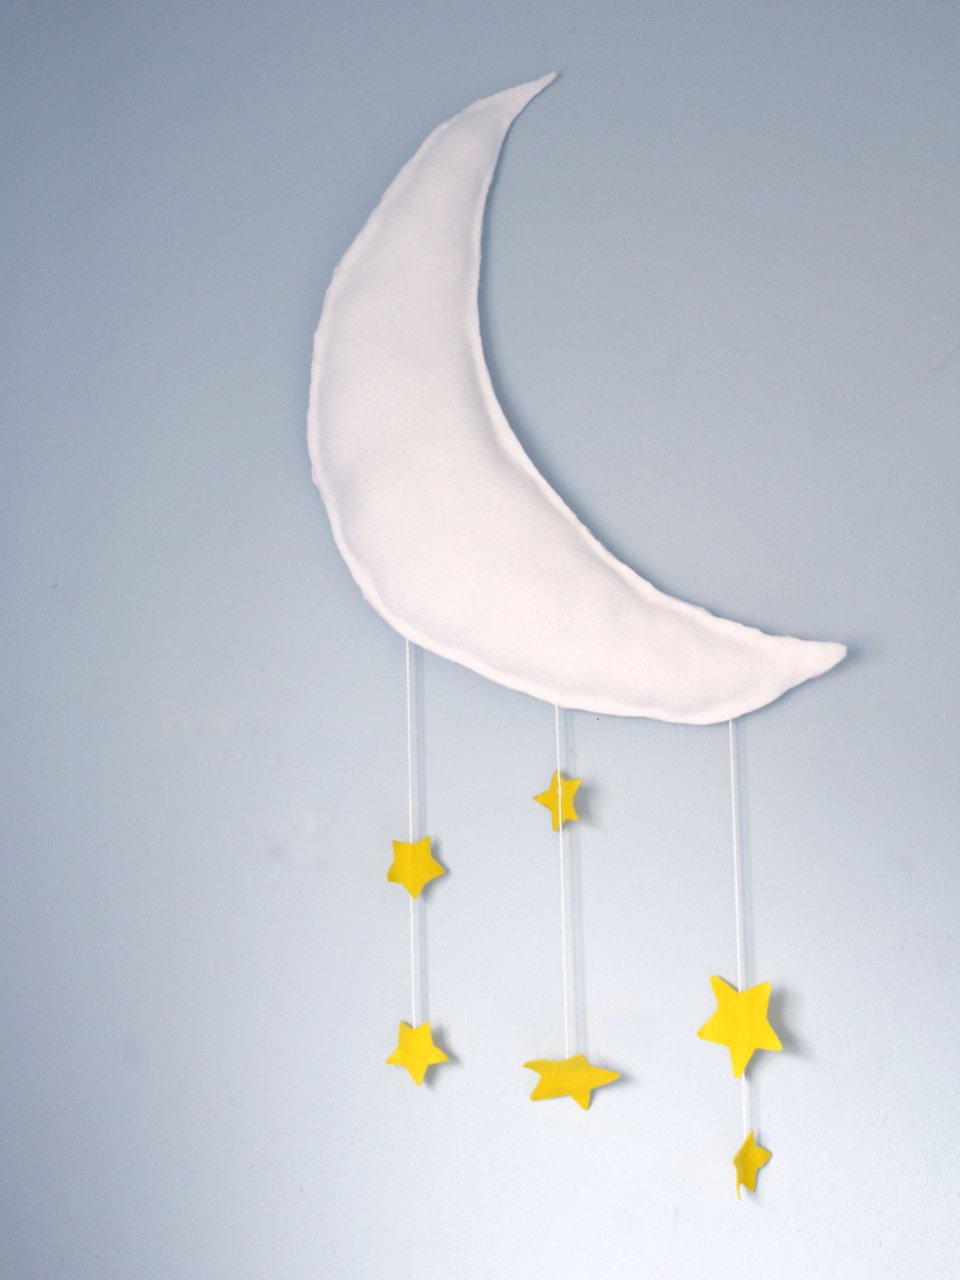 儿童房🌛最多月亮的地方大概是这个星月主题...